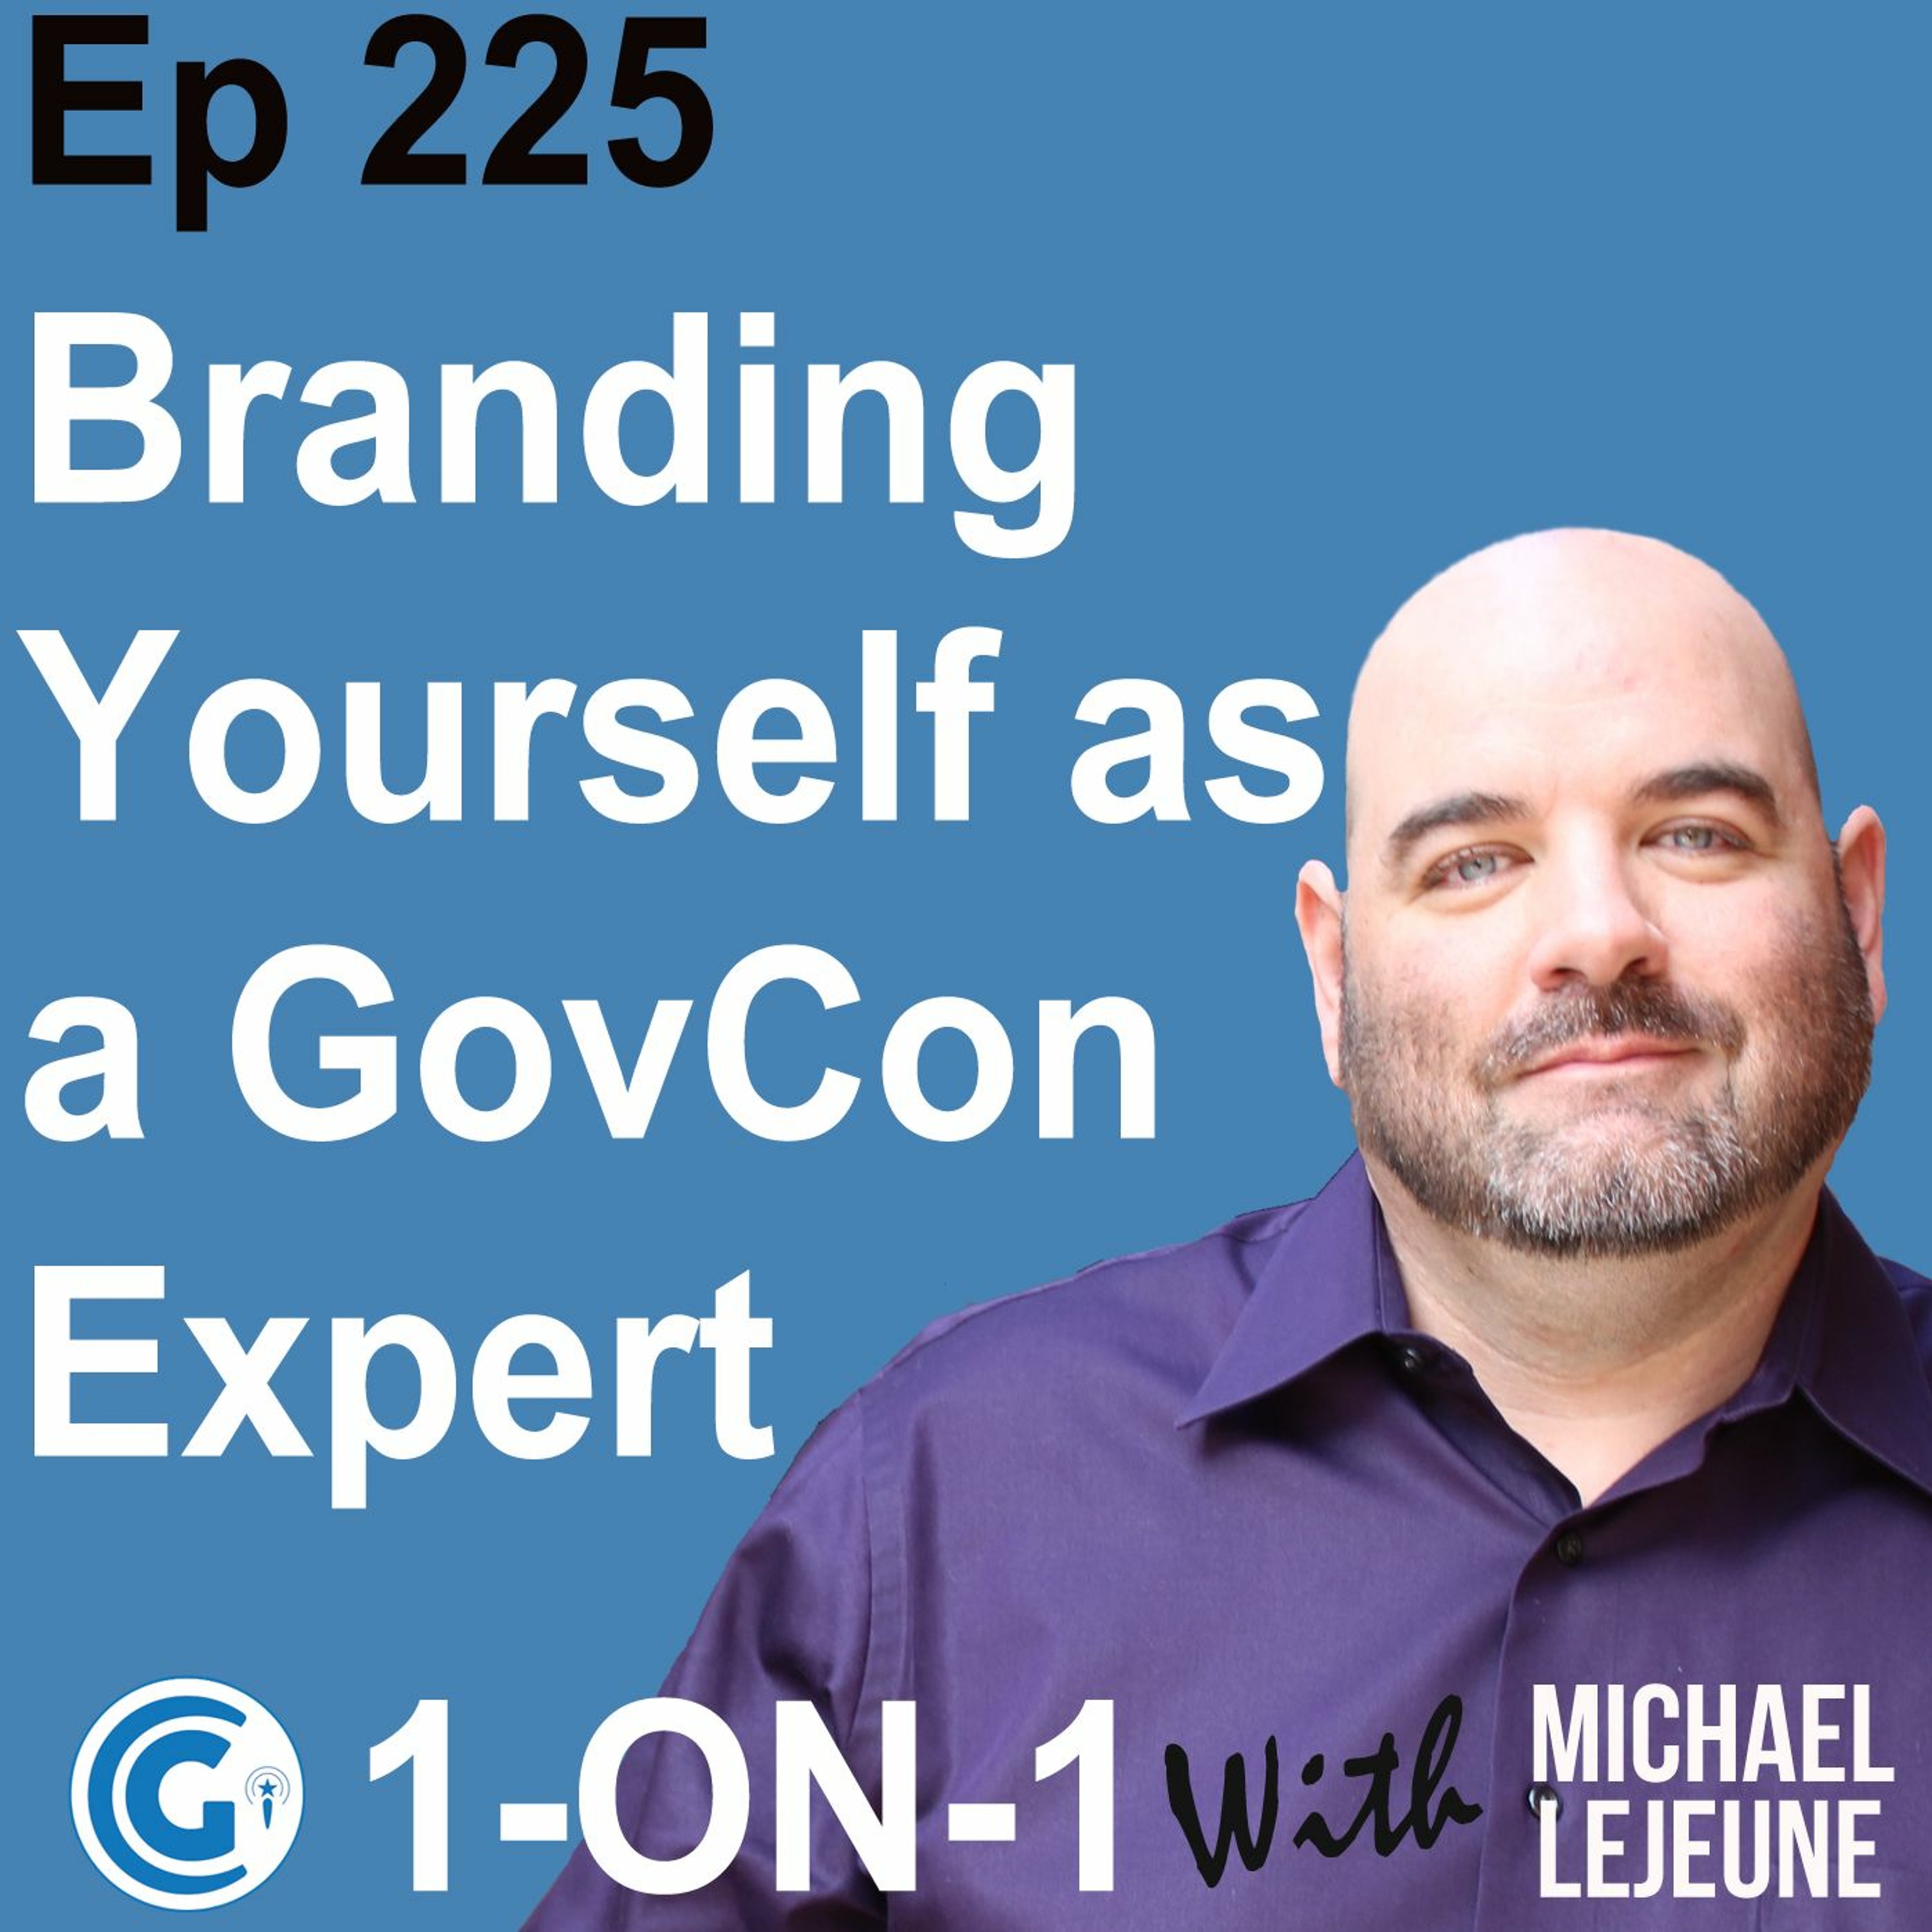 Ep 225 - Branding Yourself as a GovCon Expert